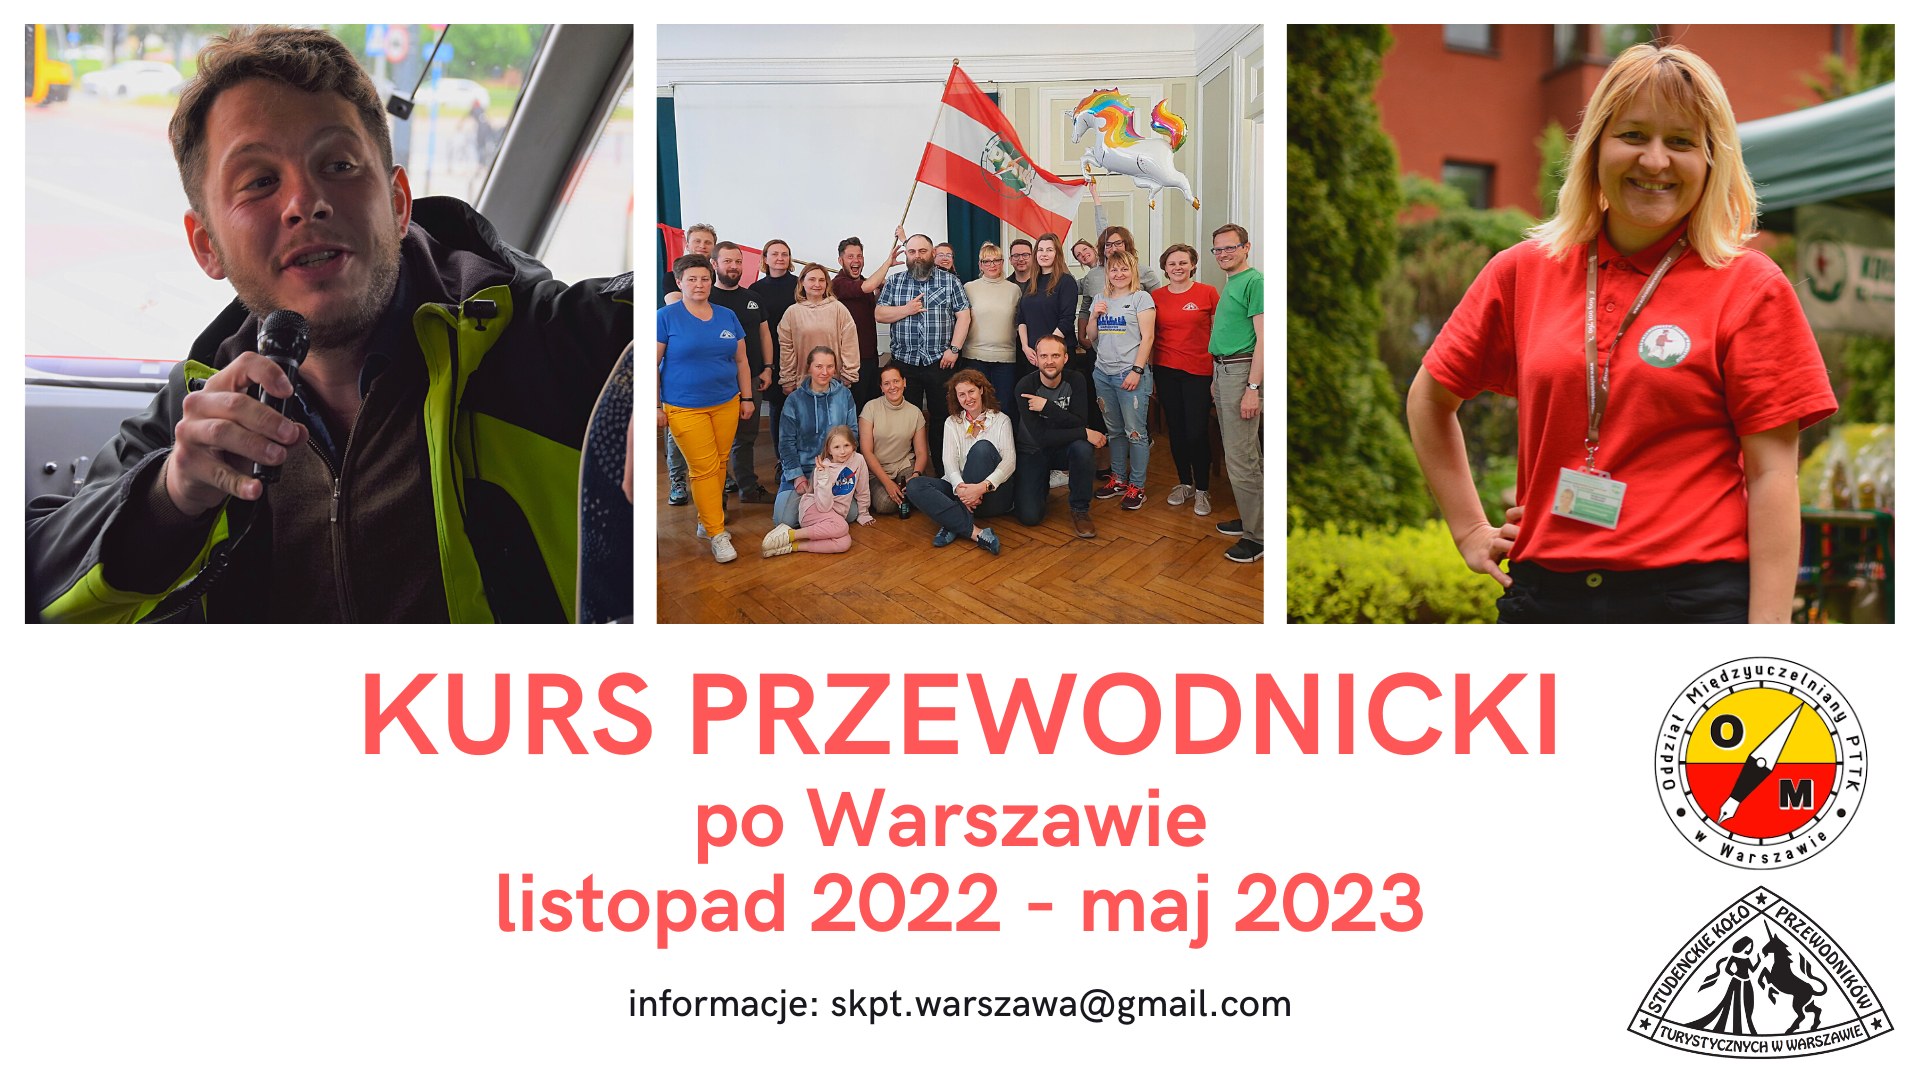 Kurs przewodnicki po Warszawie